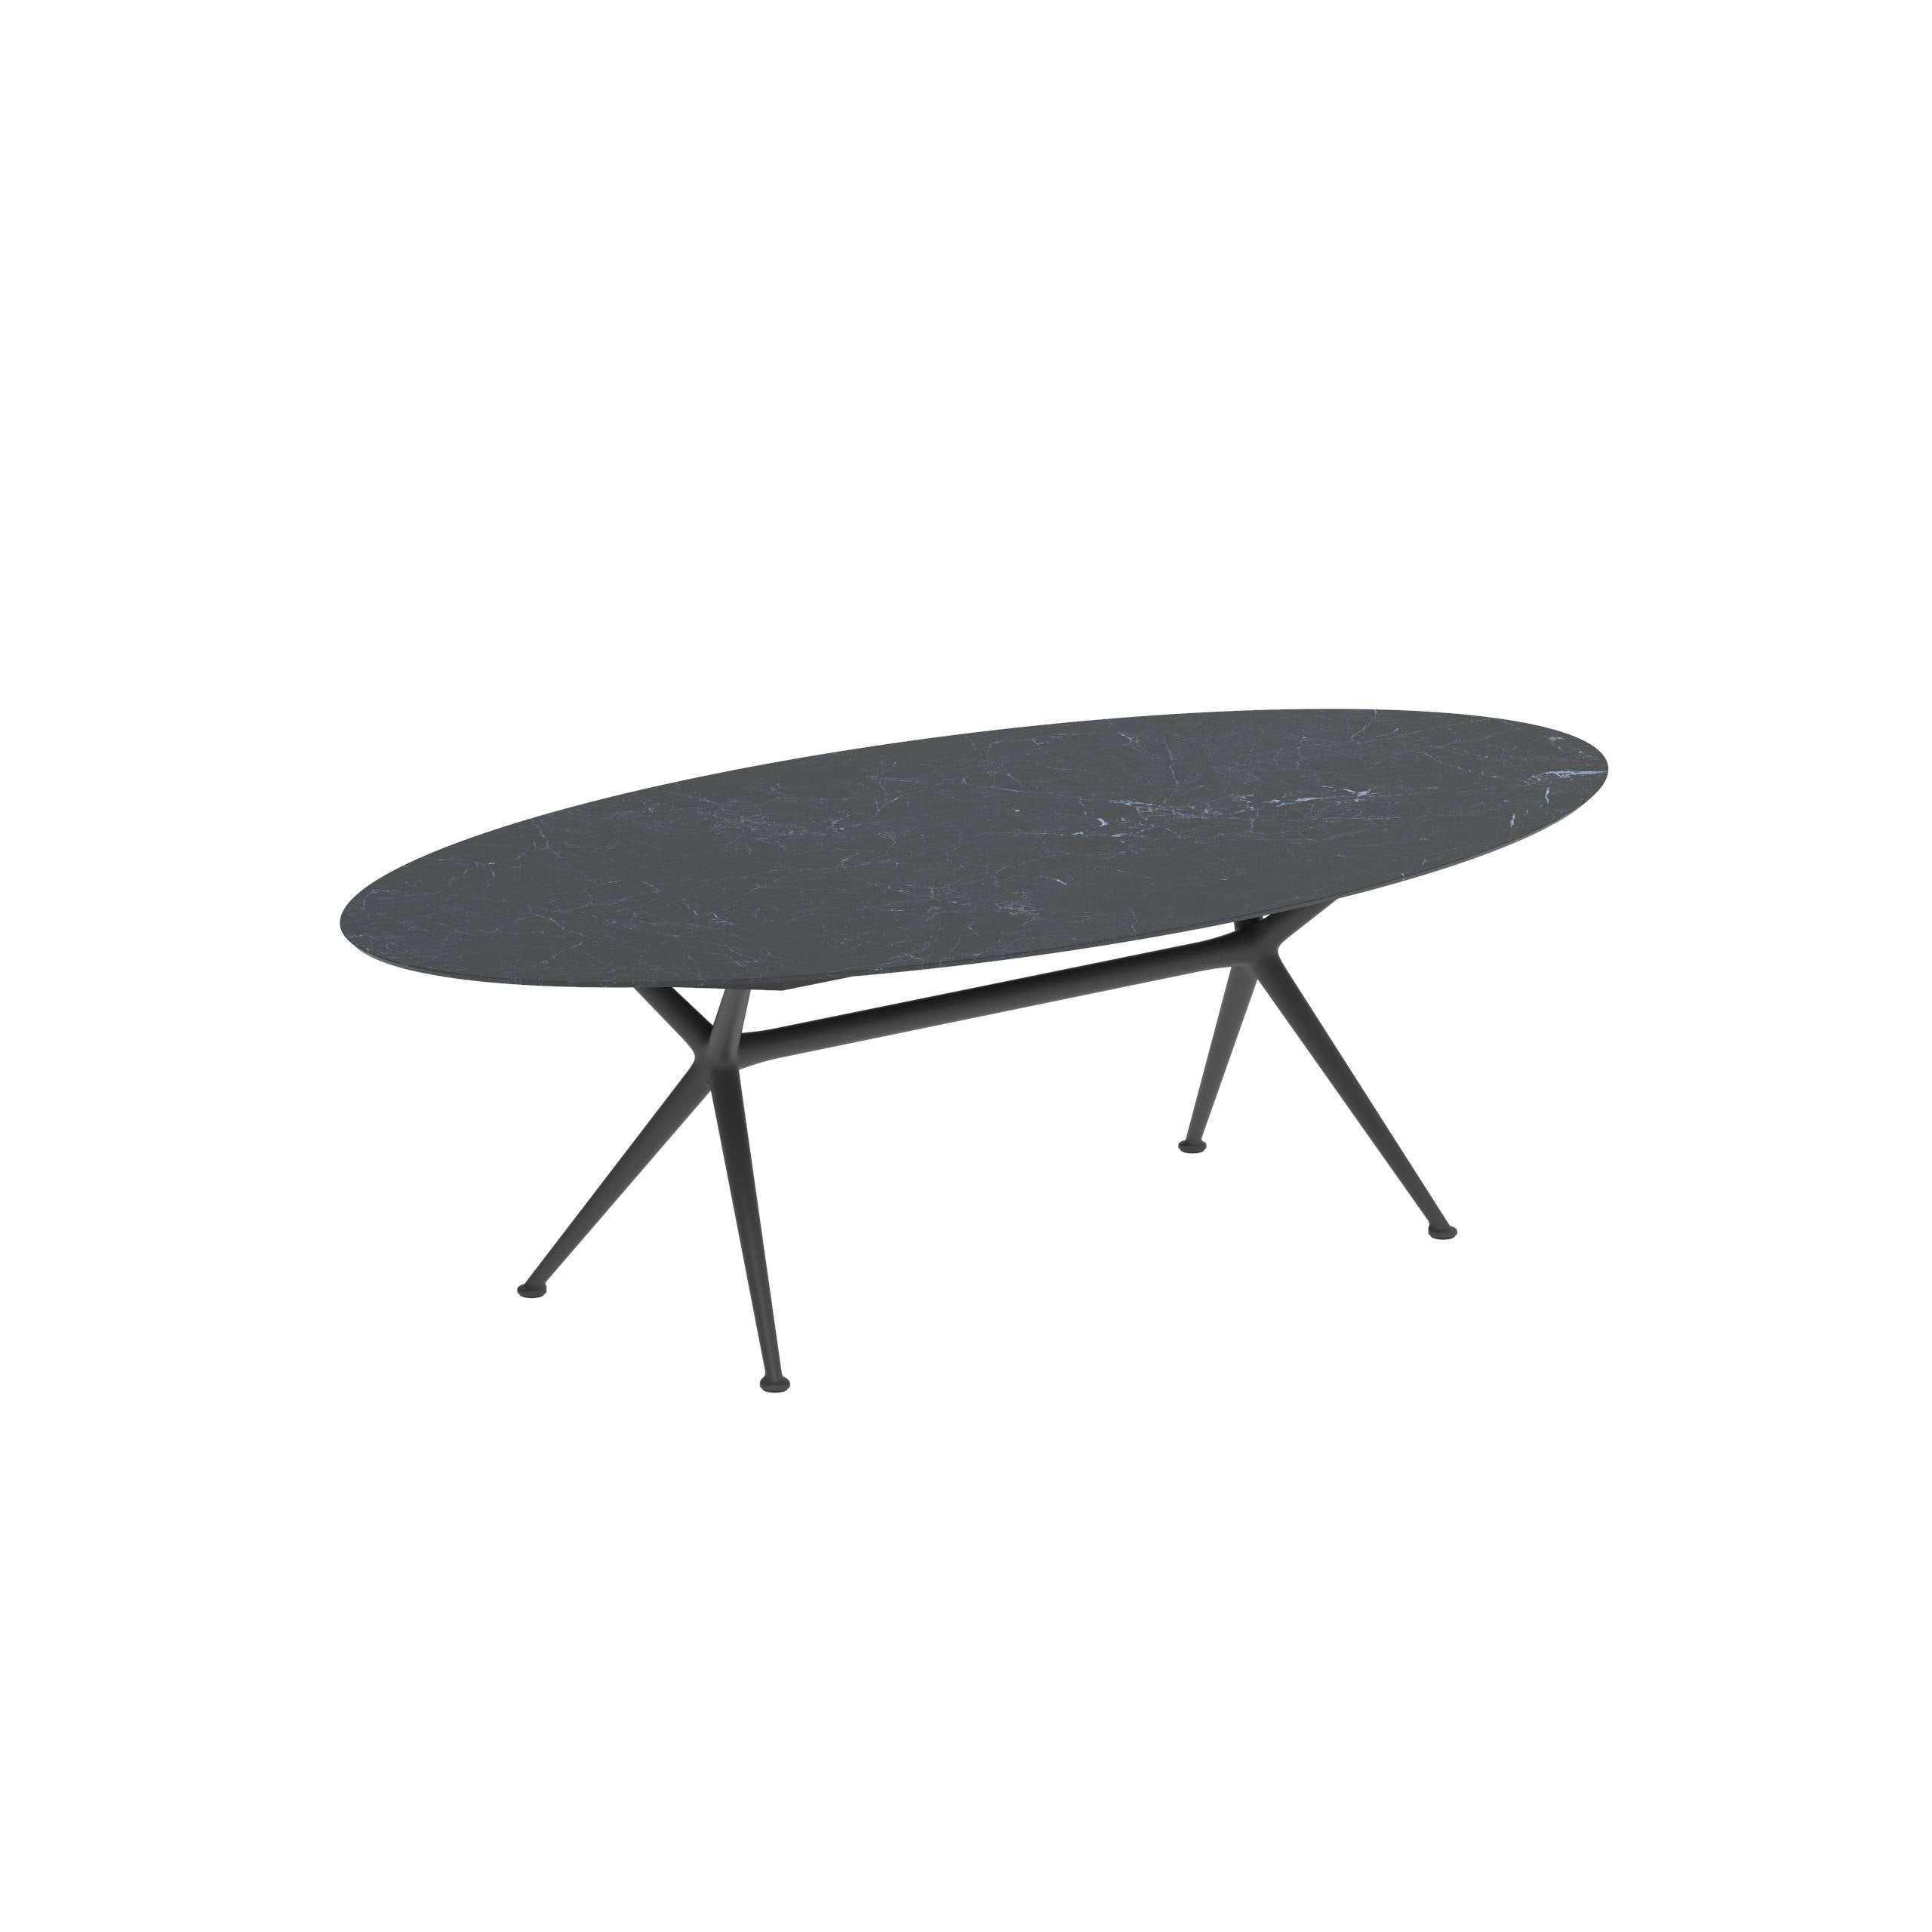 Exes Table Ellipse 250x130cm Alu Legs Anthracite - Table Top Ceramic Nero Marquina